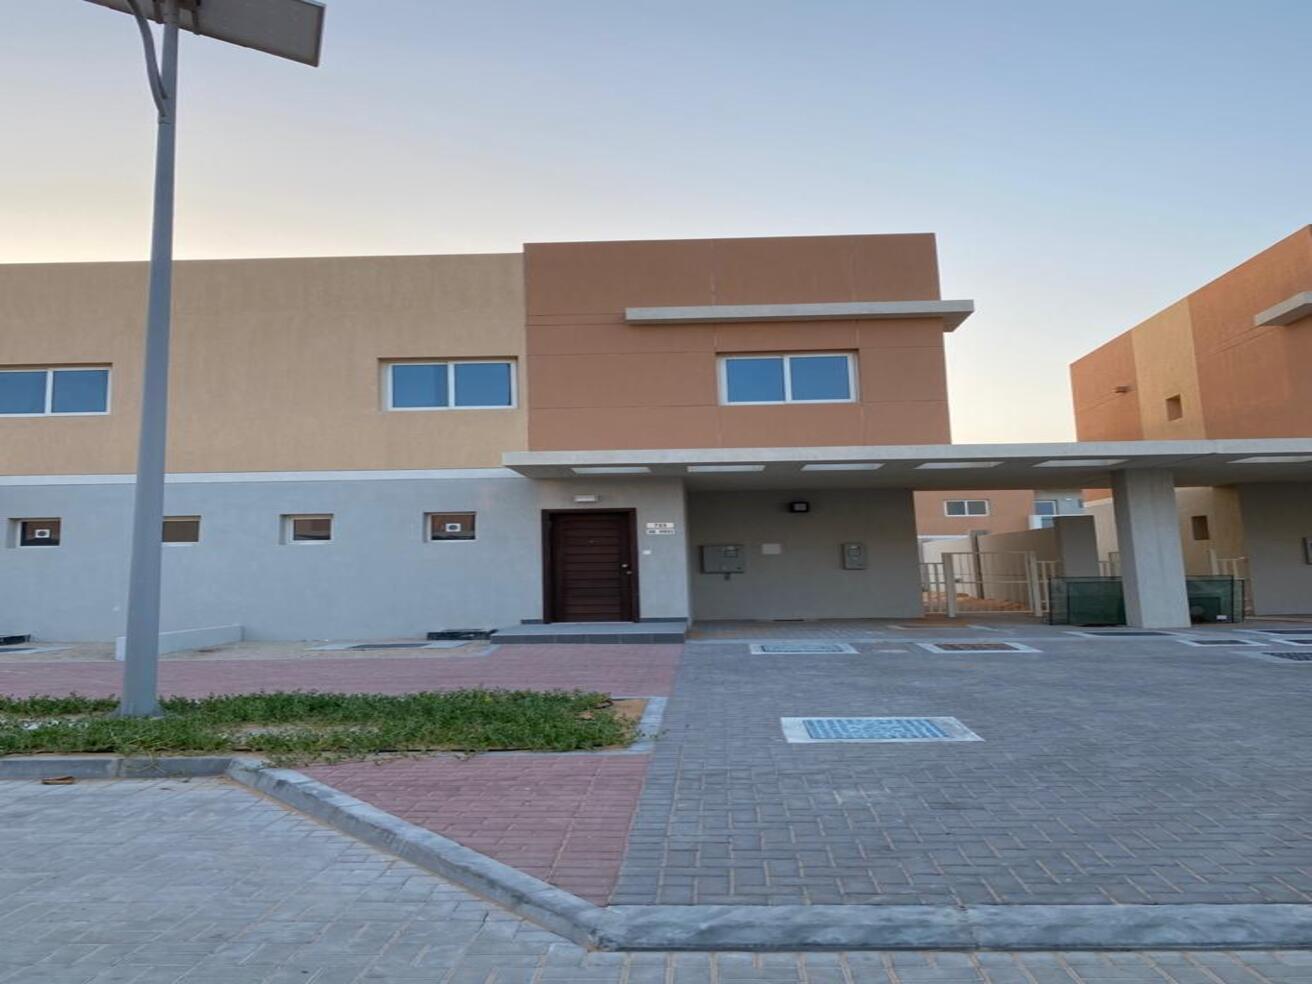 Real Estate_Villas for Sale_Al Samha